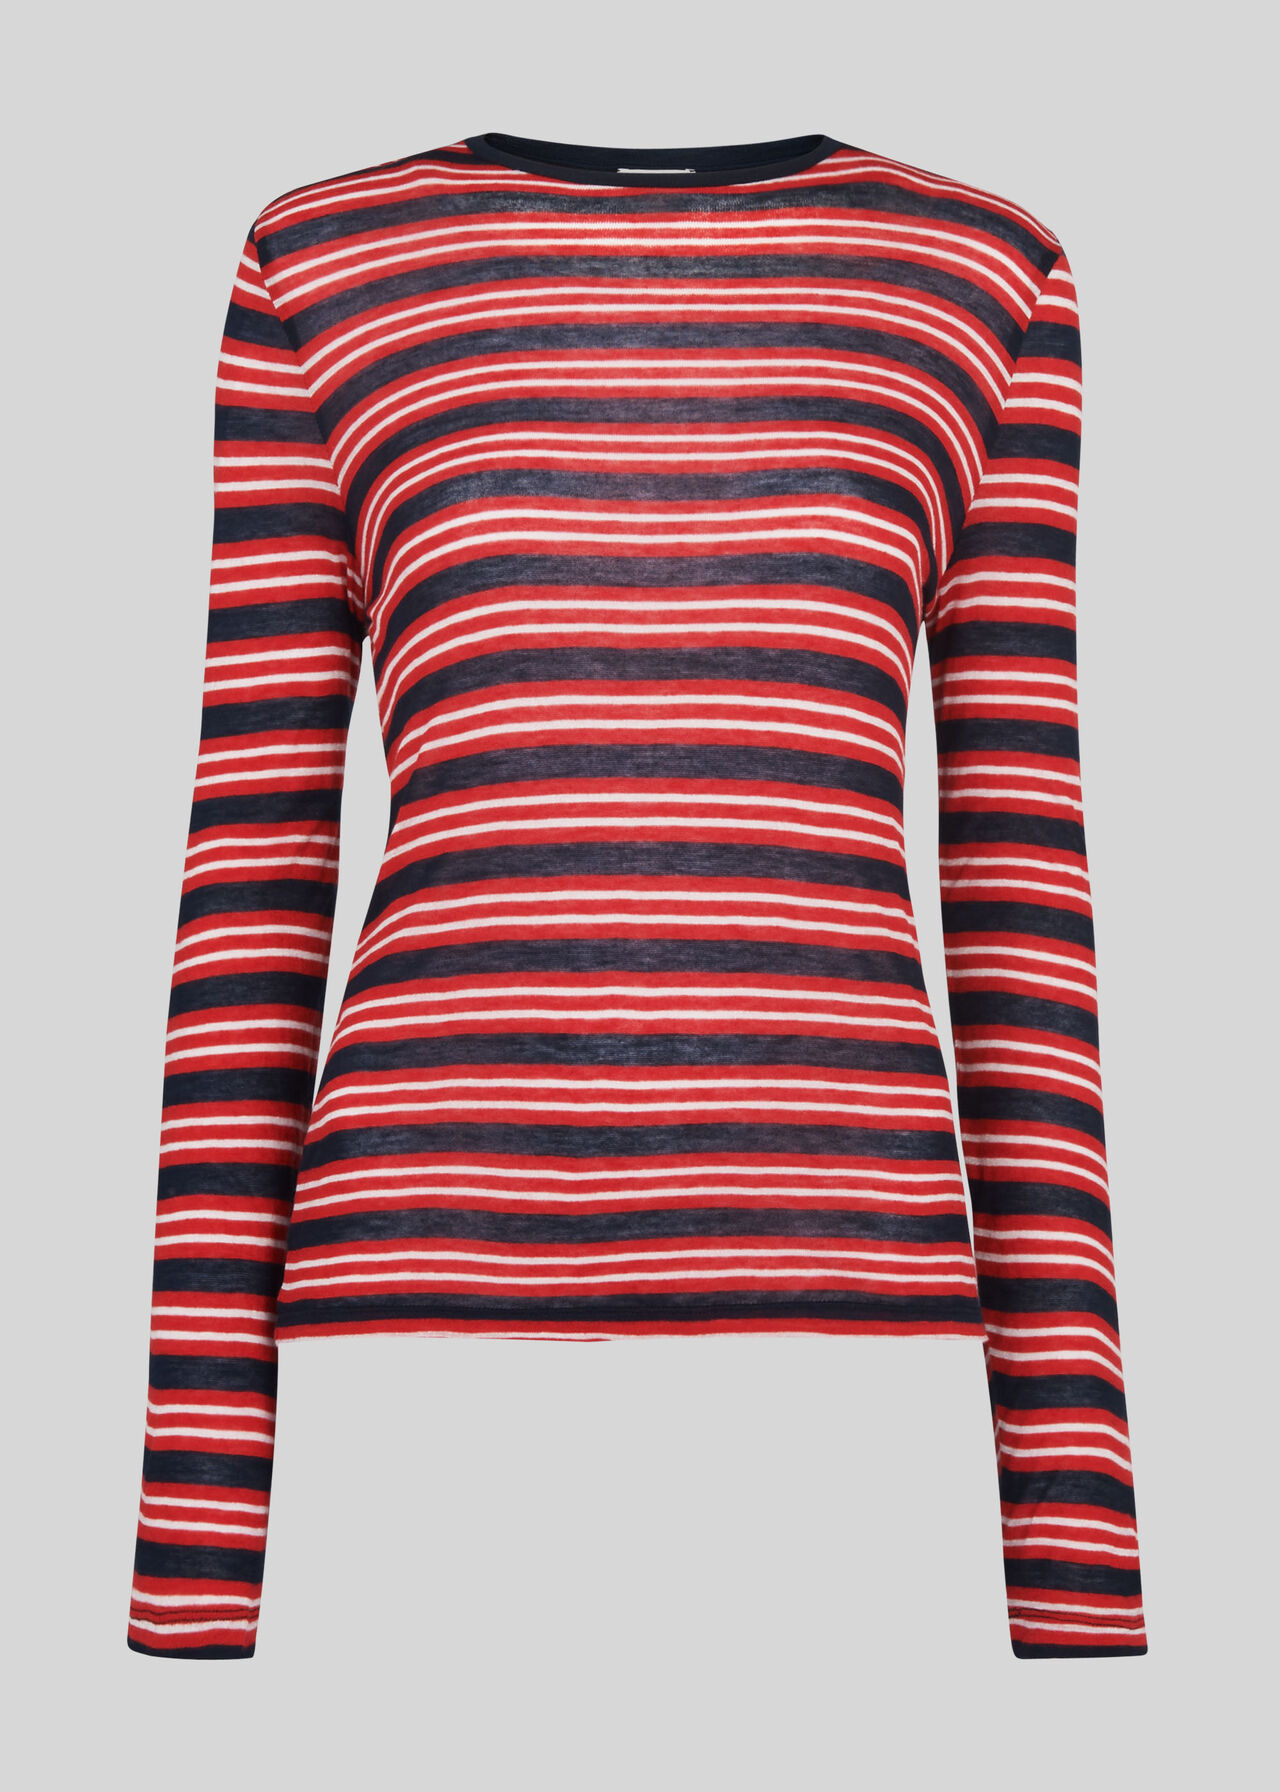 Essential Stripe Top Red/Multi